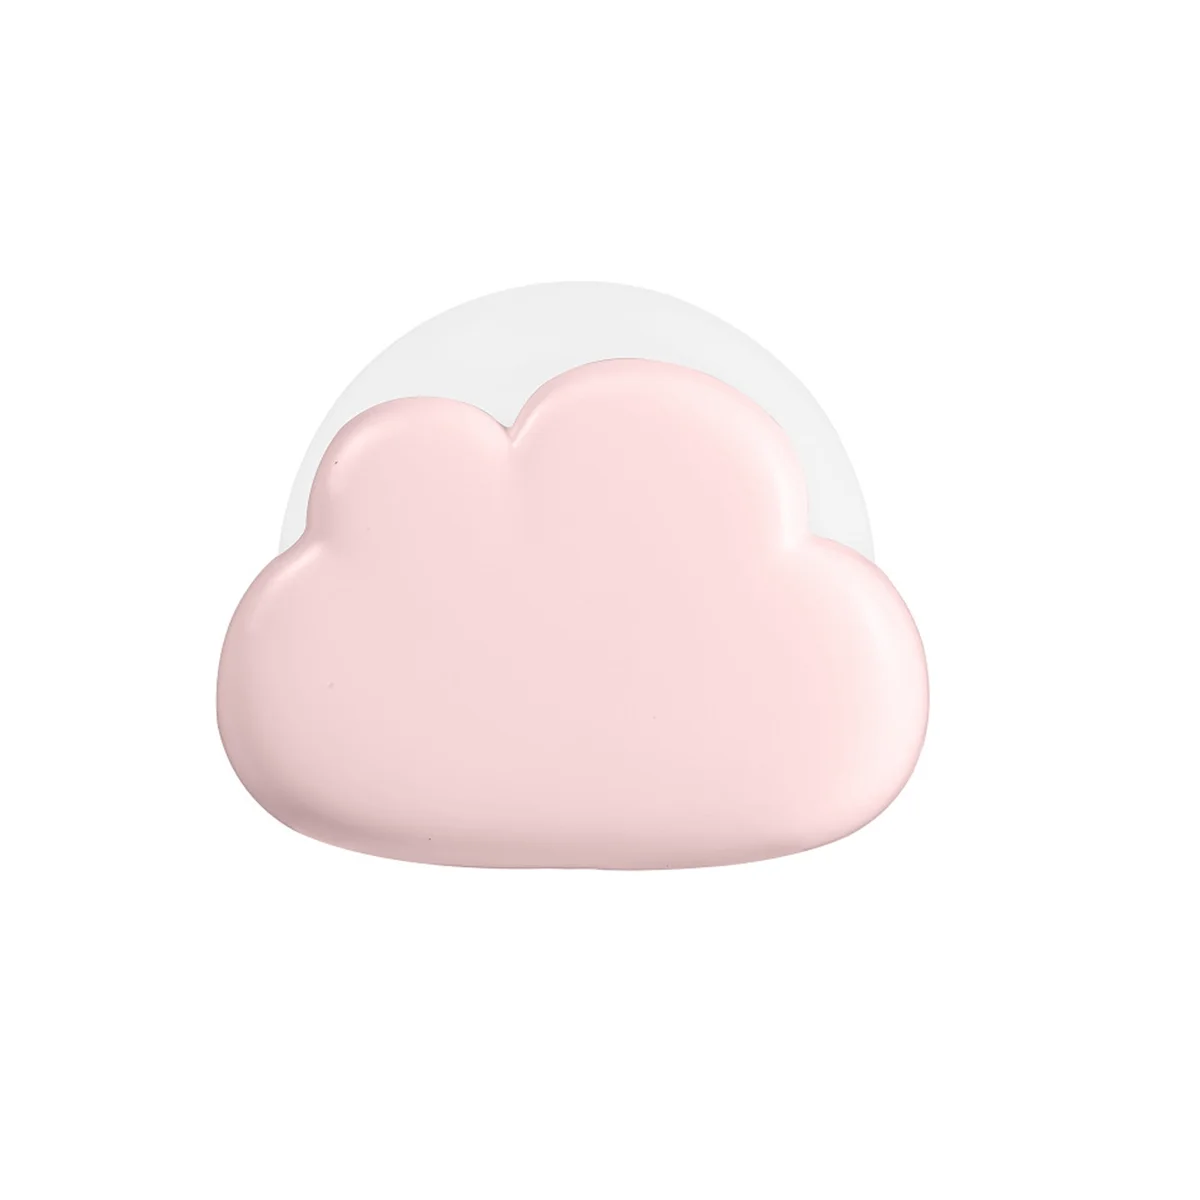 

Ночник в виде облака, Настольная декоративная настольная мини-лампа для спальни, подарок на день рождения, знаменитость, ночник в виде облака, цвет розовый